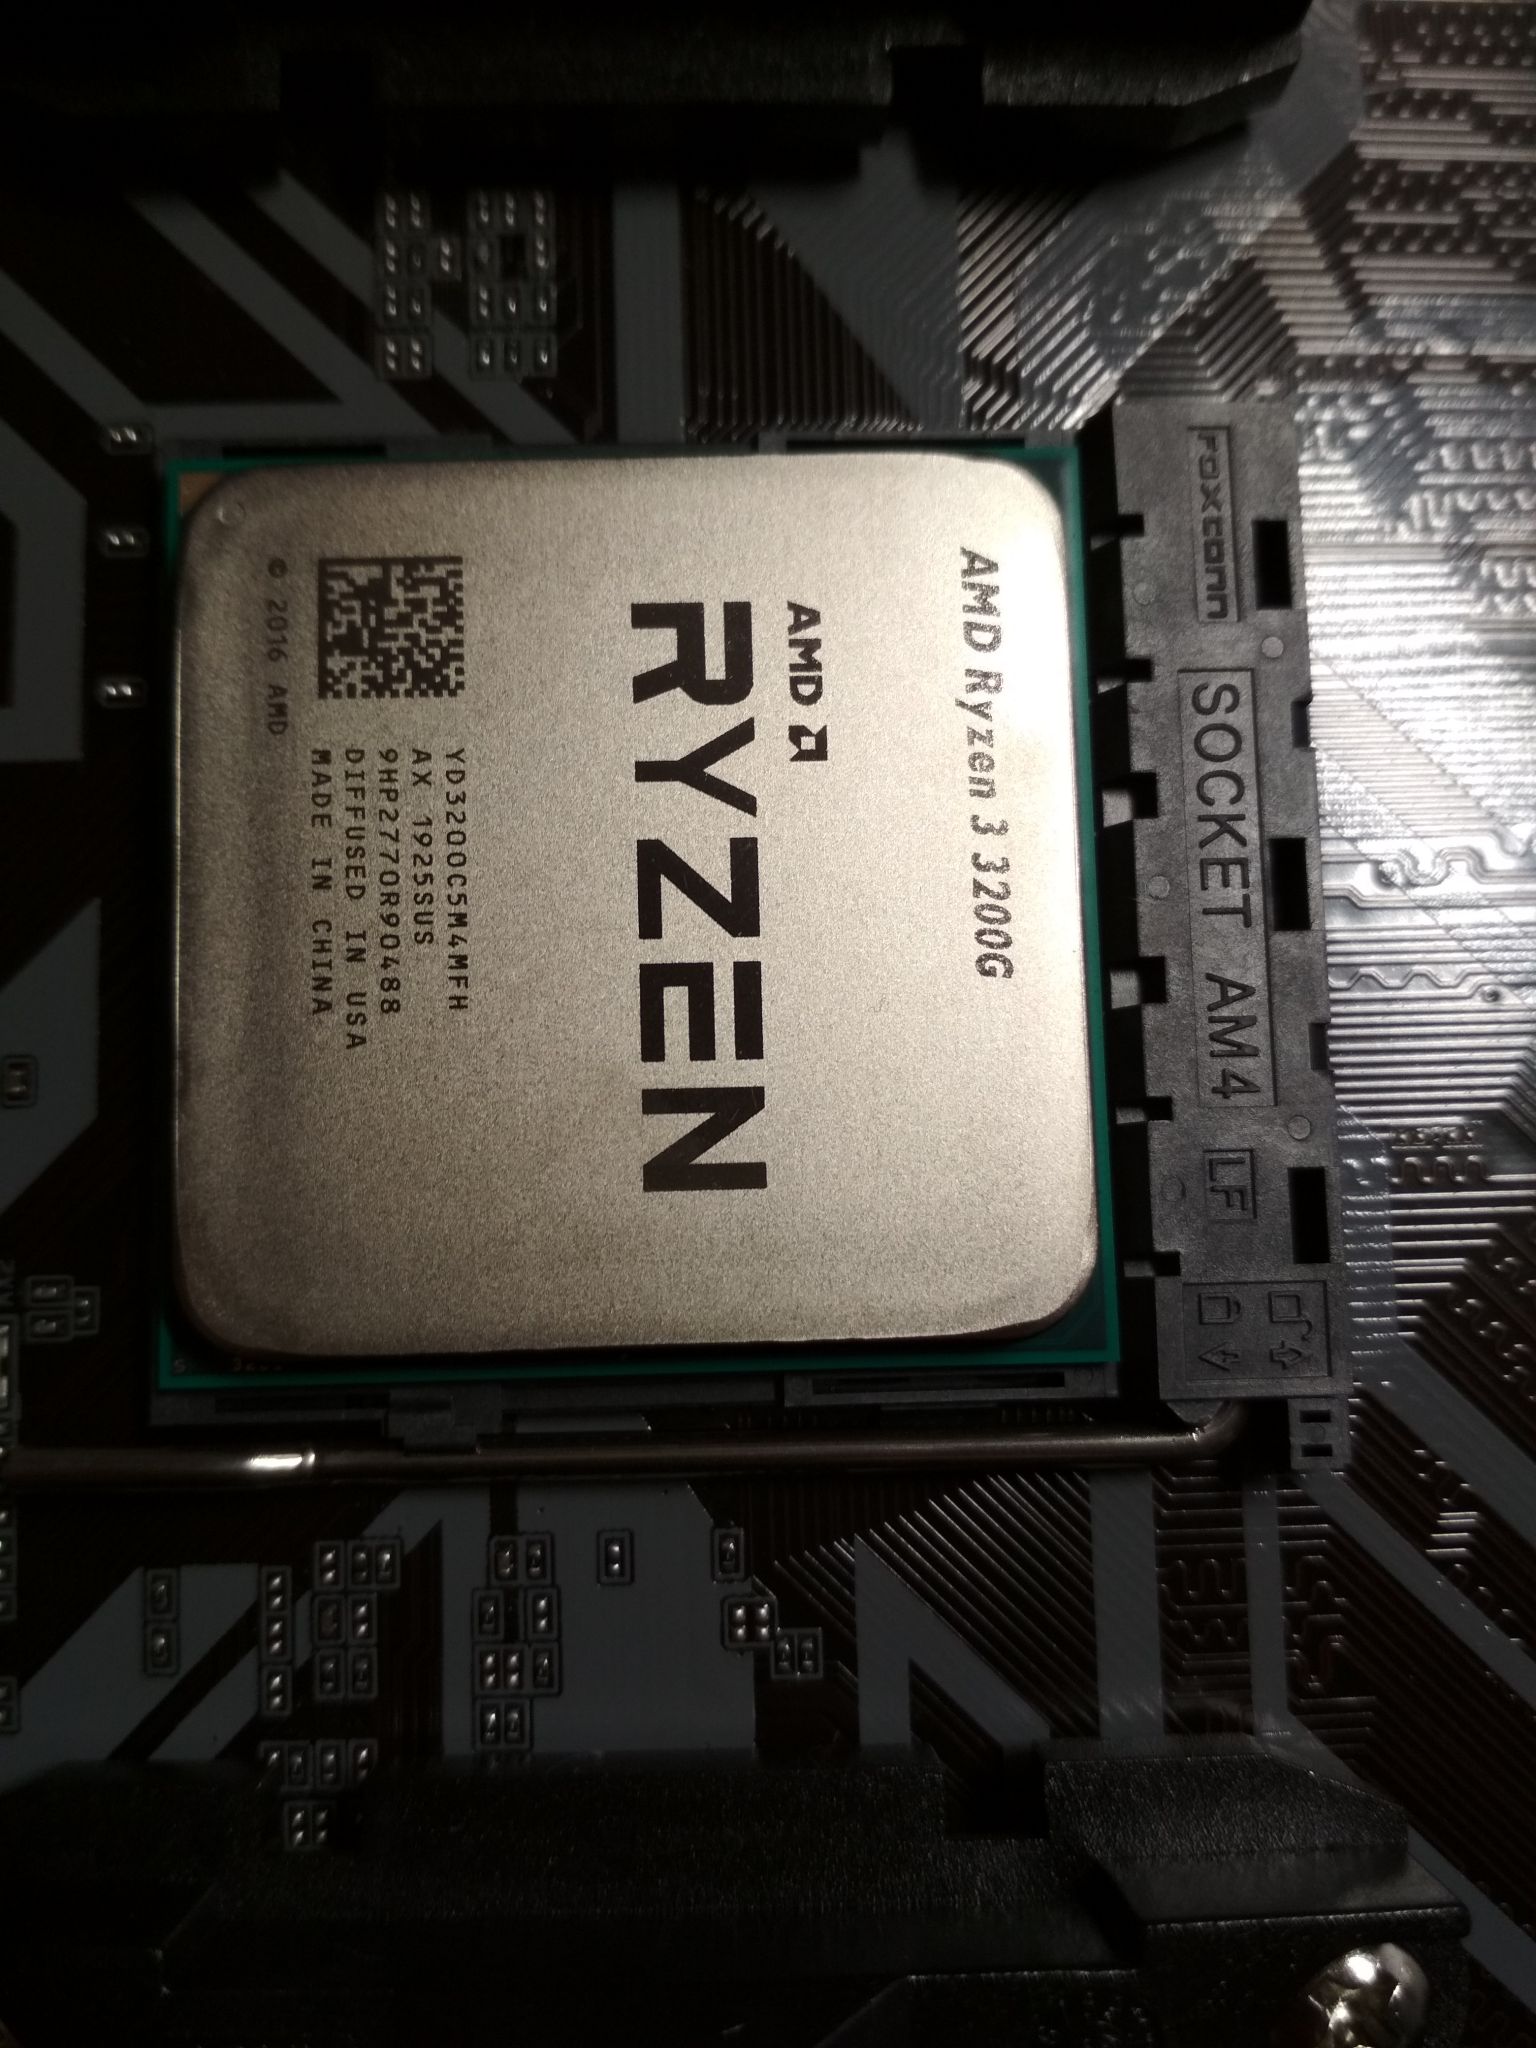 3 pro 3200g. Процессор AMD Ryzen 3 3200g. Процессор AMD Ryzen 3 3200g am4. AMD Ryzen 3 Pro 3200g. Ryzen 3 3200g vega8.